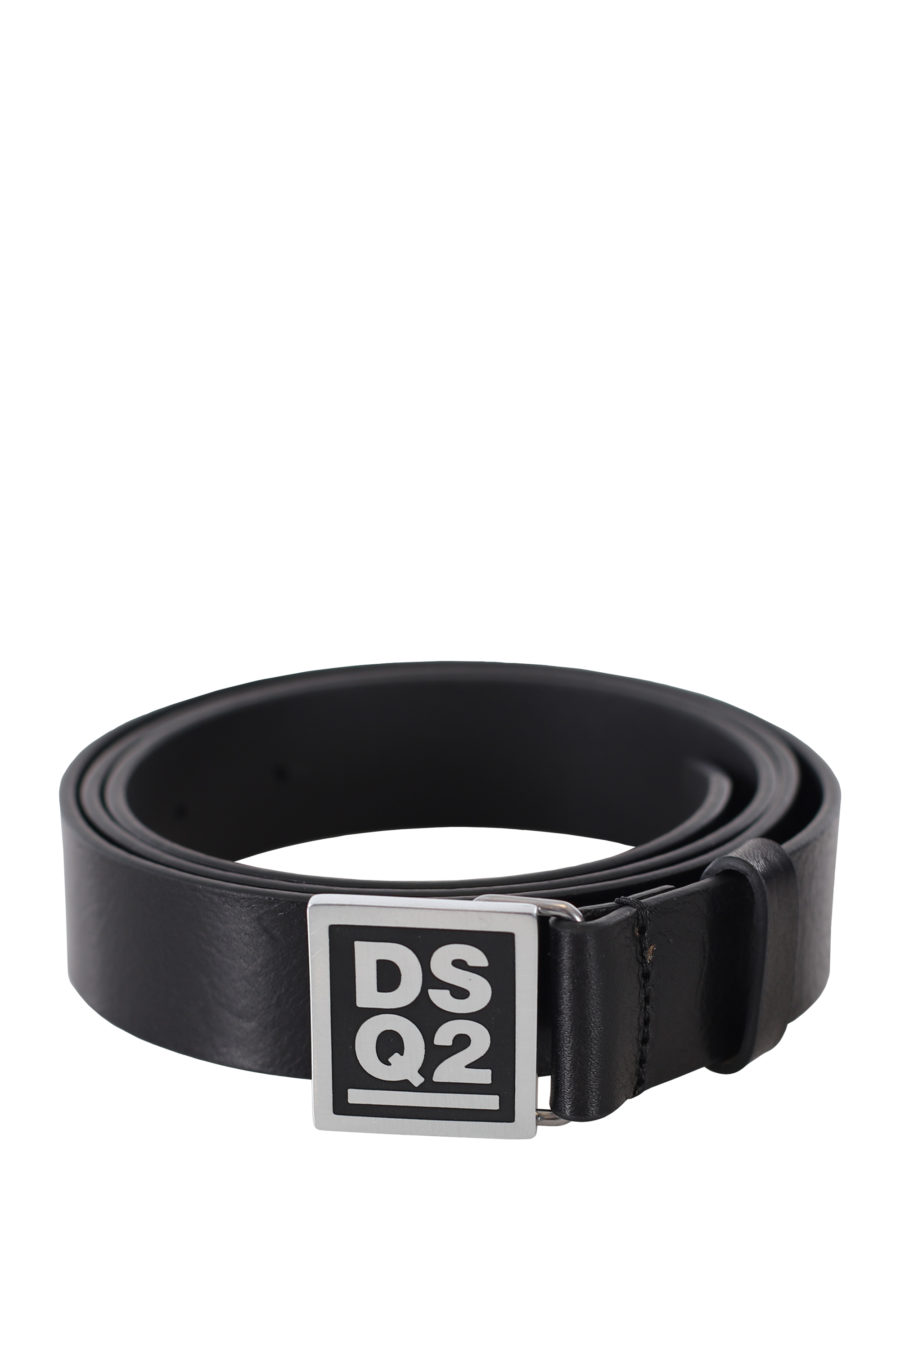 Black belt with "dsq2" logo on badge - IMG 9401